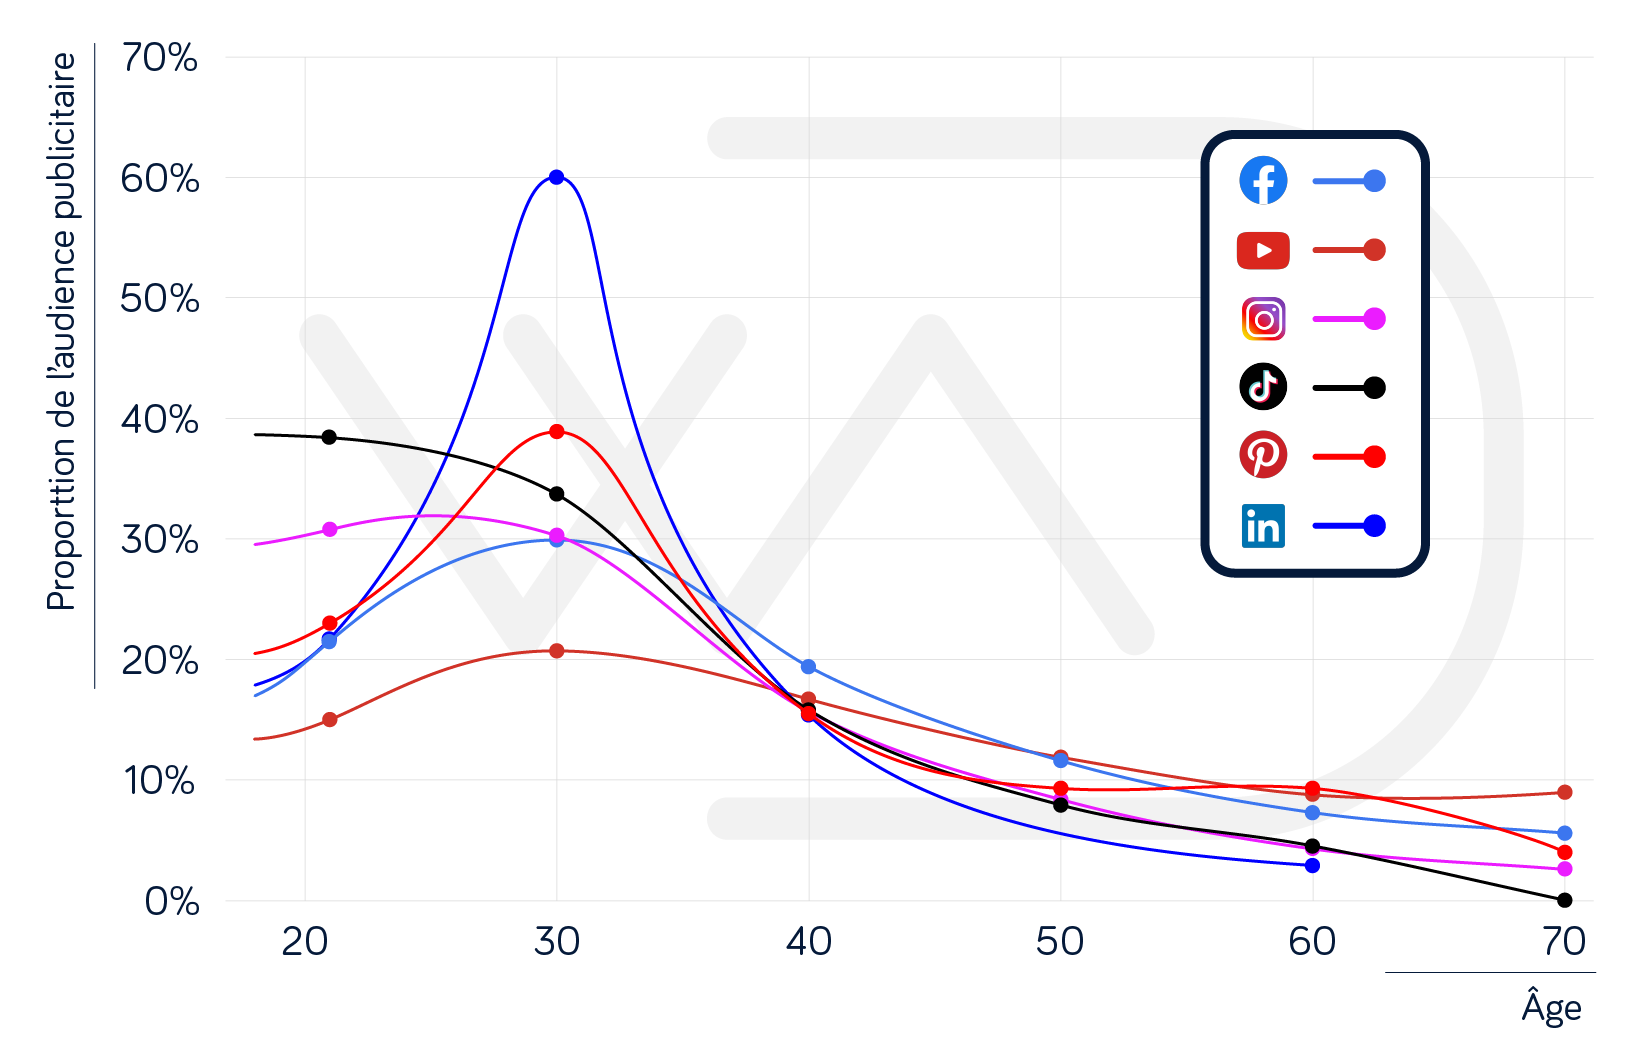 Statistique réseaux sociaux : Graphique donnant la répartition des utilisateurs en fonction de leur âge pour Facebook, Instagram, TikTok, YouTube, LinkedIn et Pinterest.